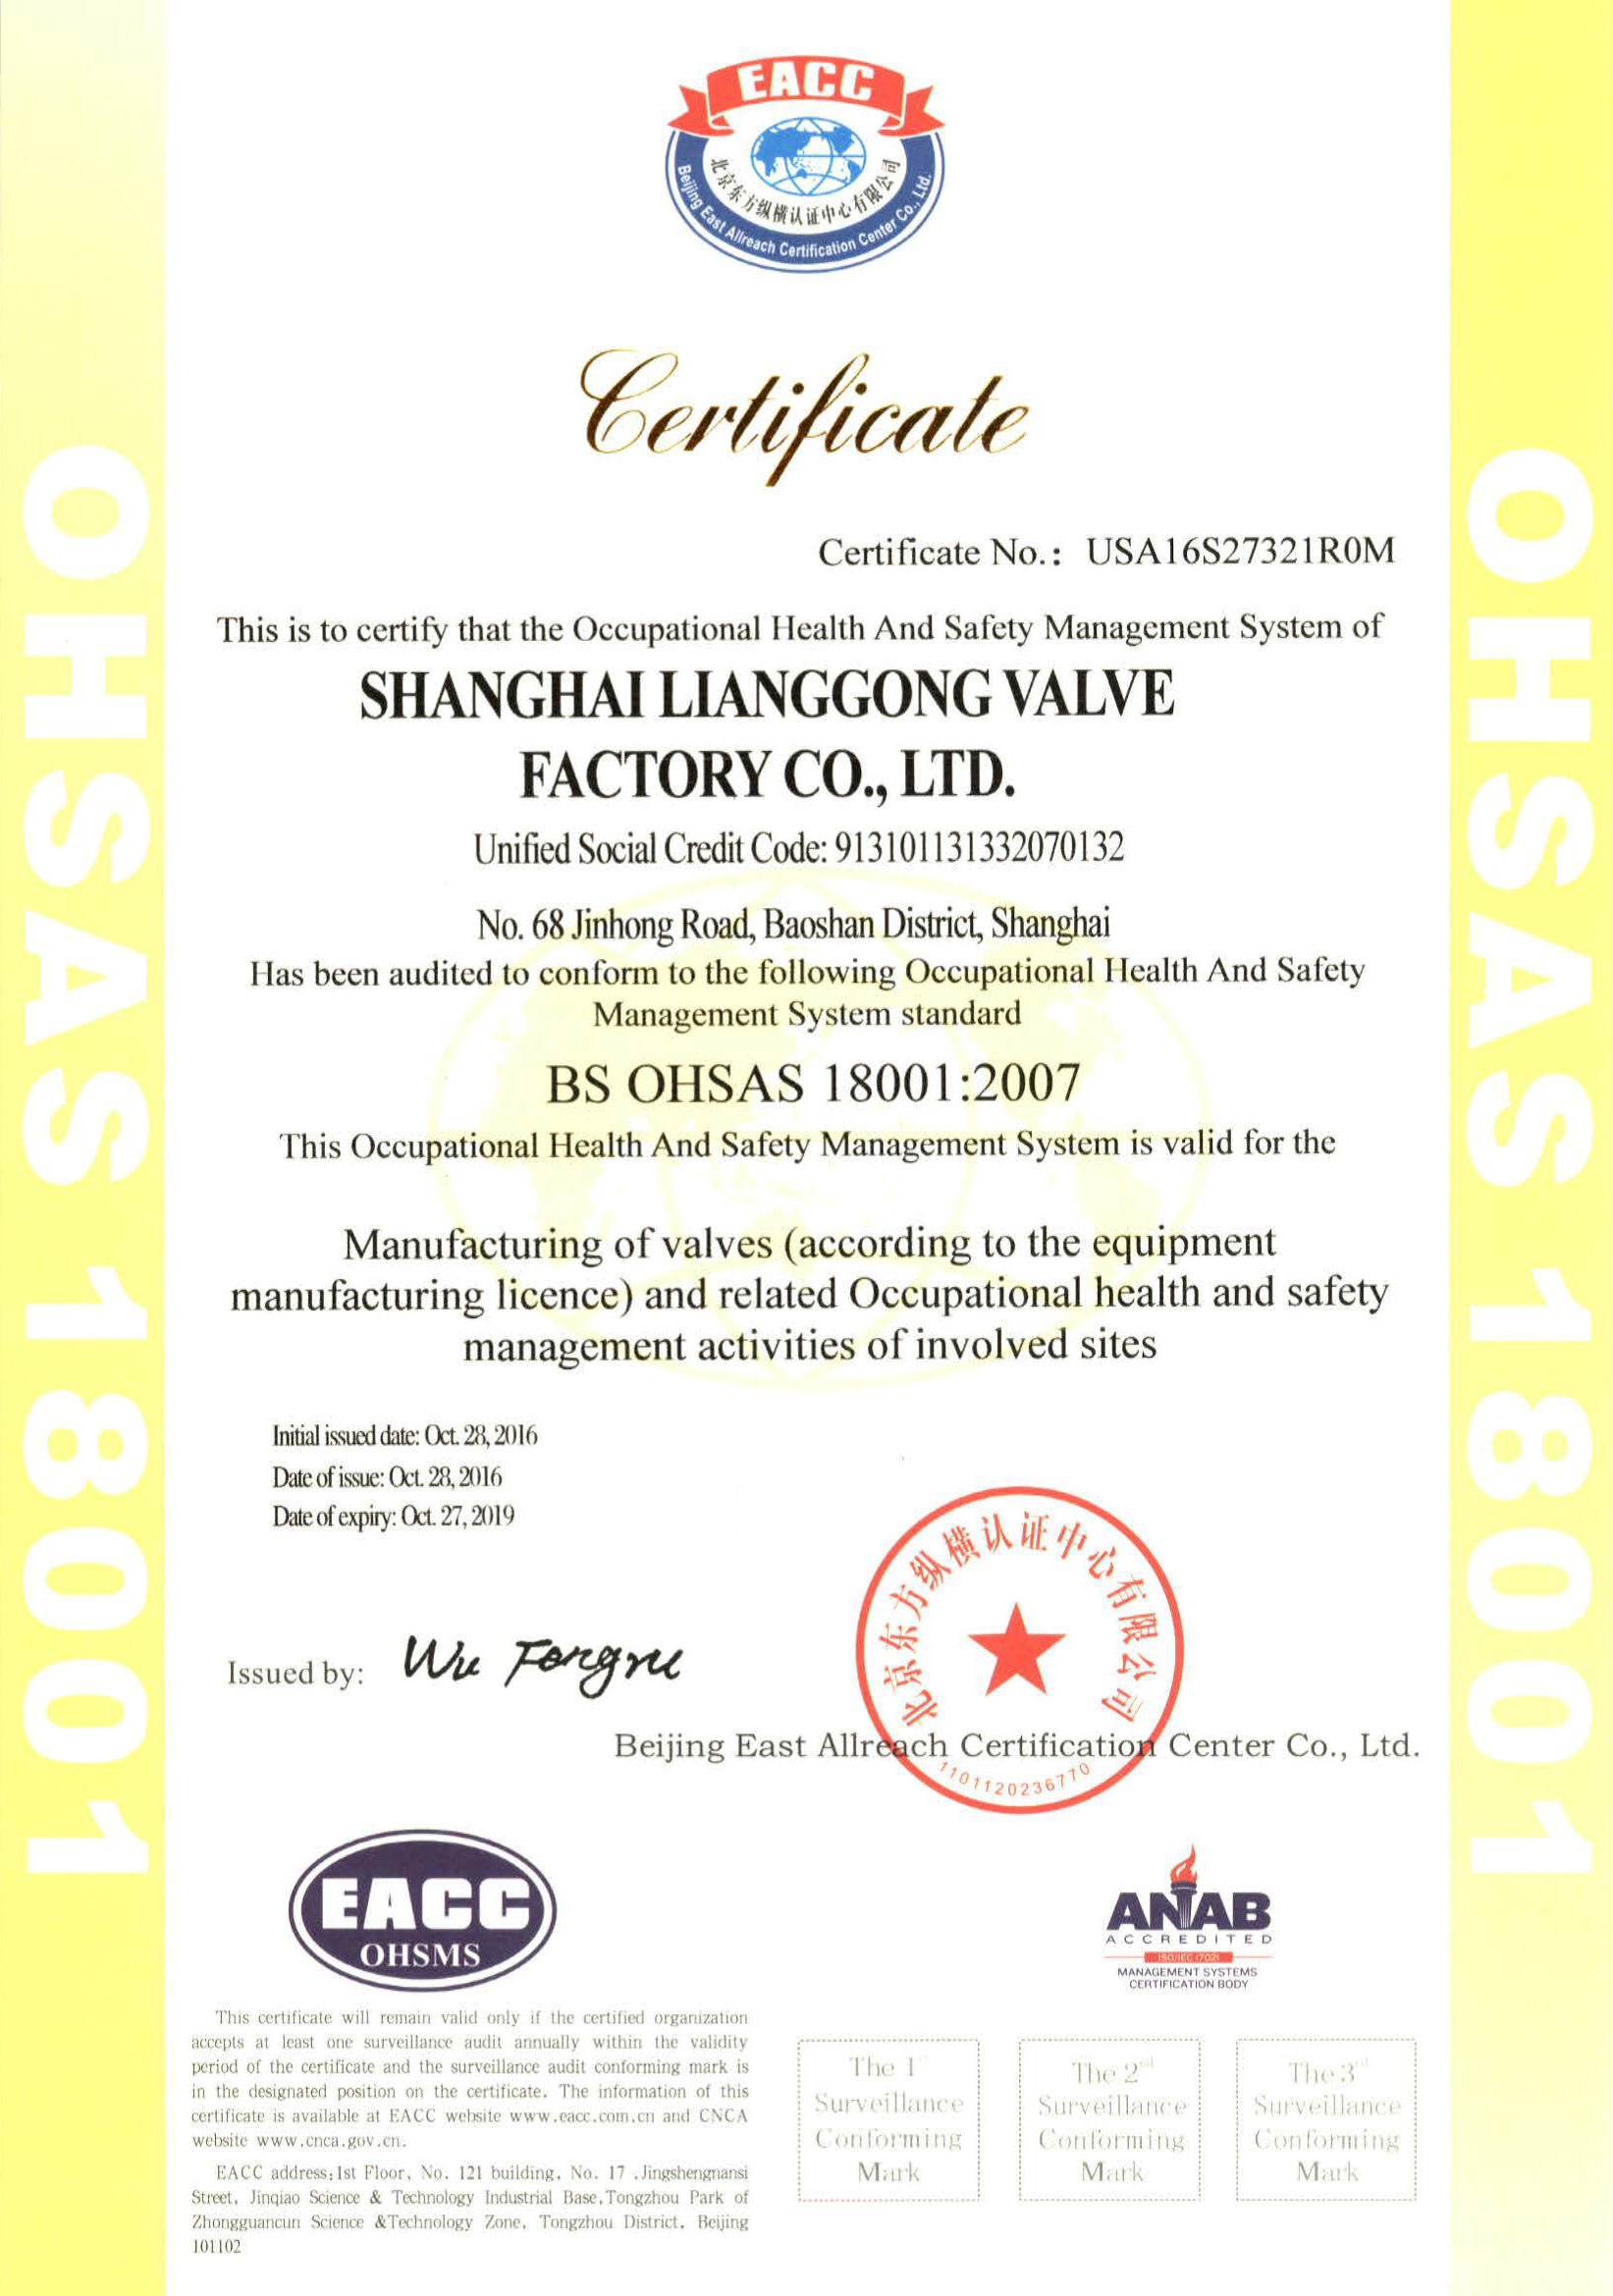 SH-R000315上海良工阀门厂有限公司S证书